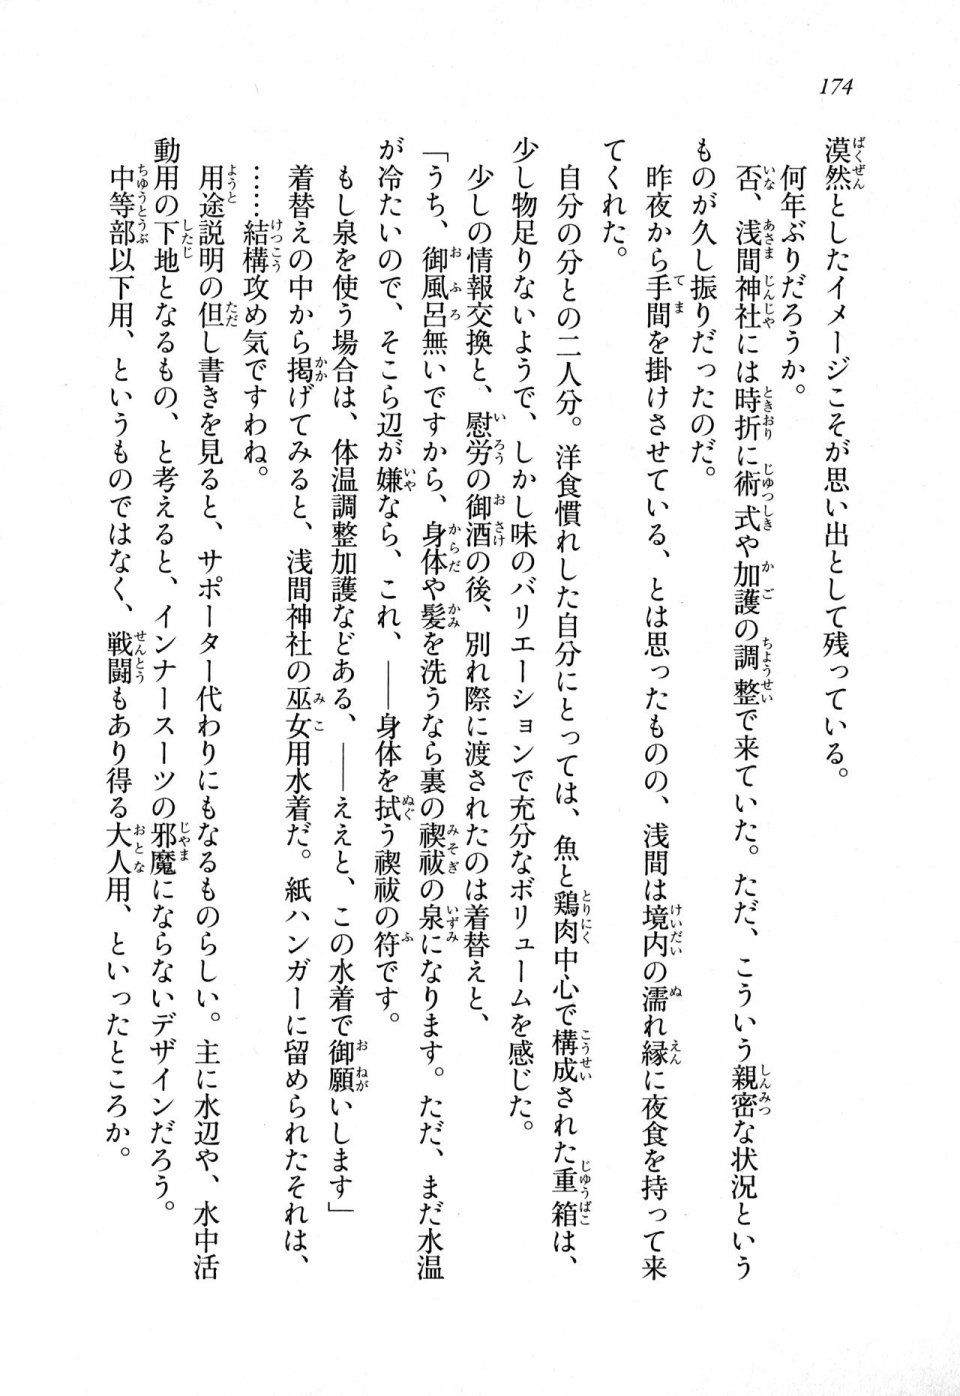 Kyoukai Senjou no Horizon LN Sidestory Vol 1 - Photo #172